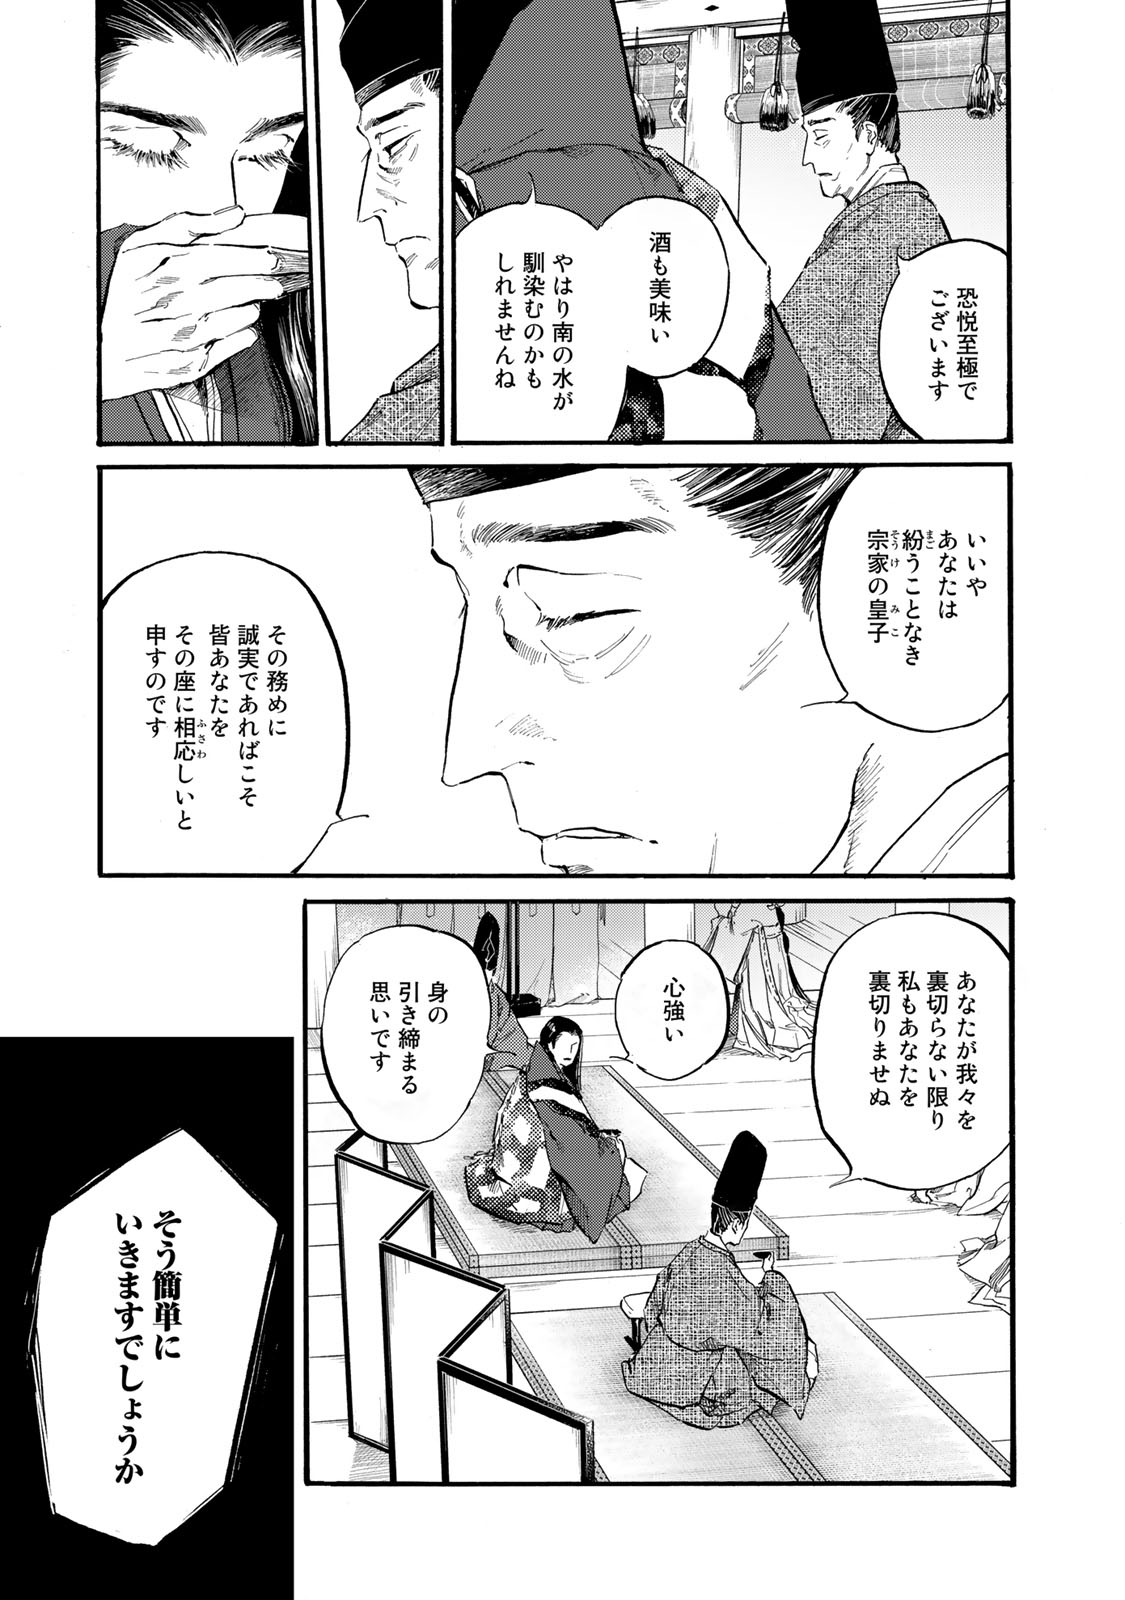 Karasu wa Aruji wo Erabanai - Chapter 38 - Page 3